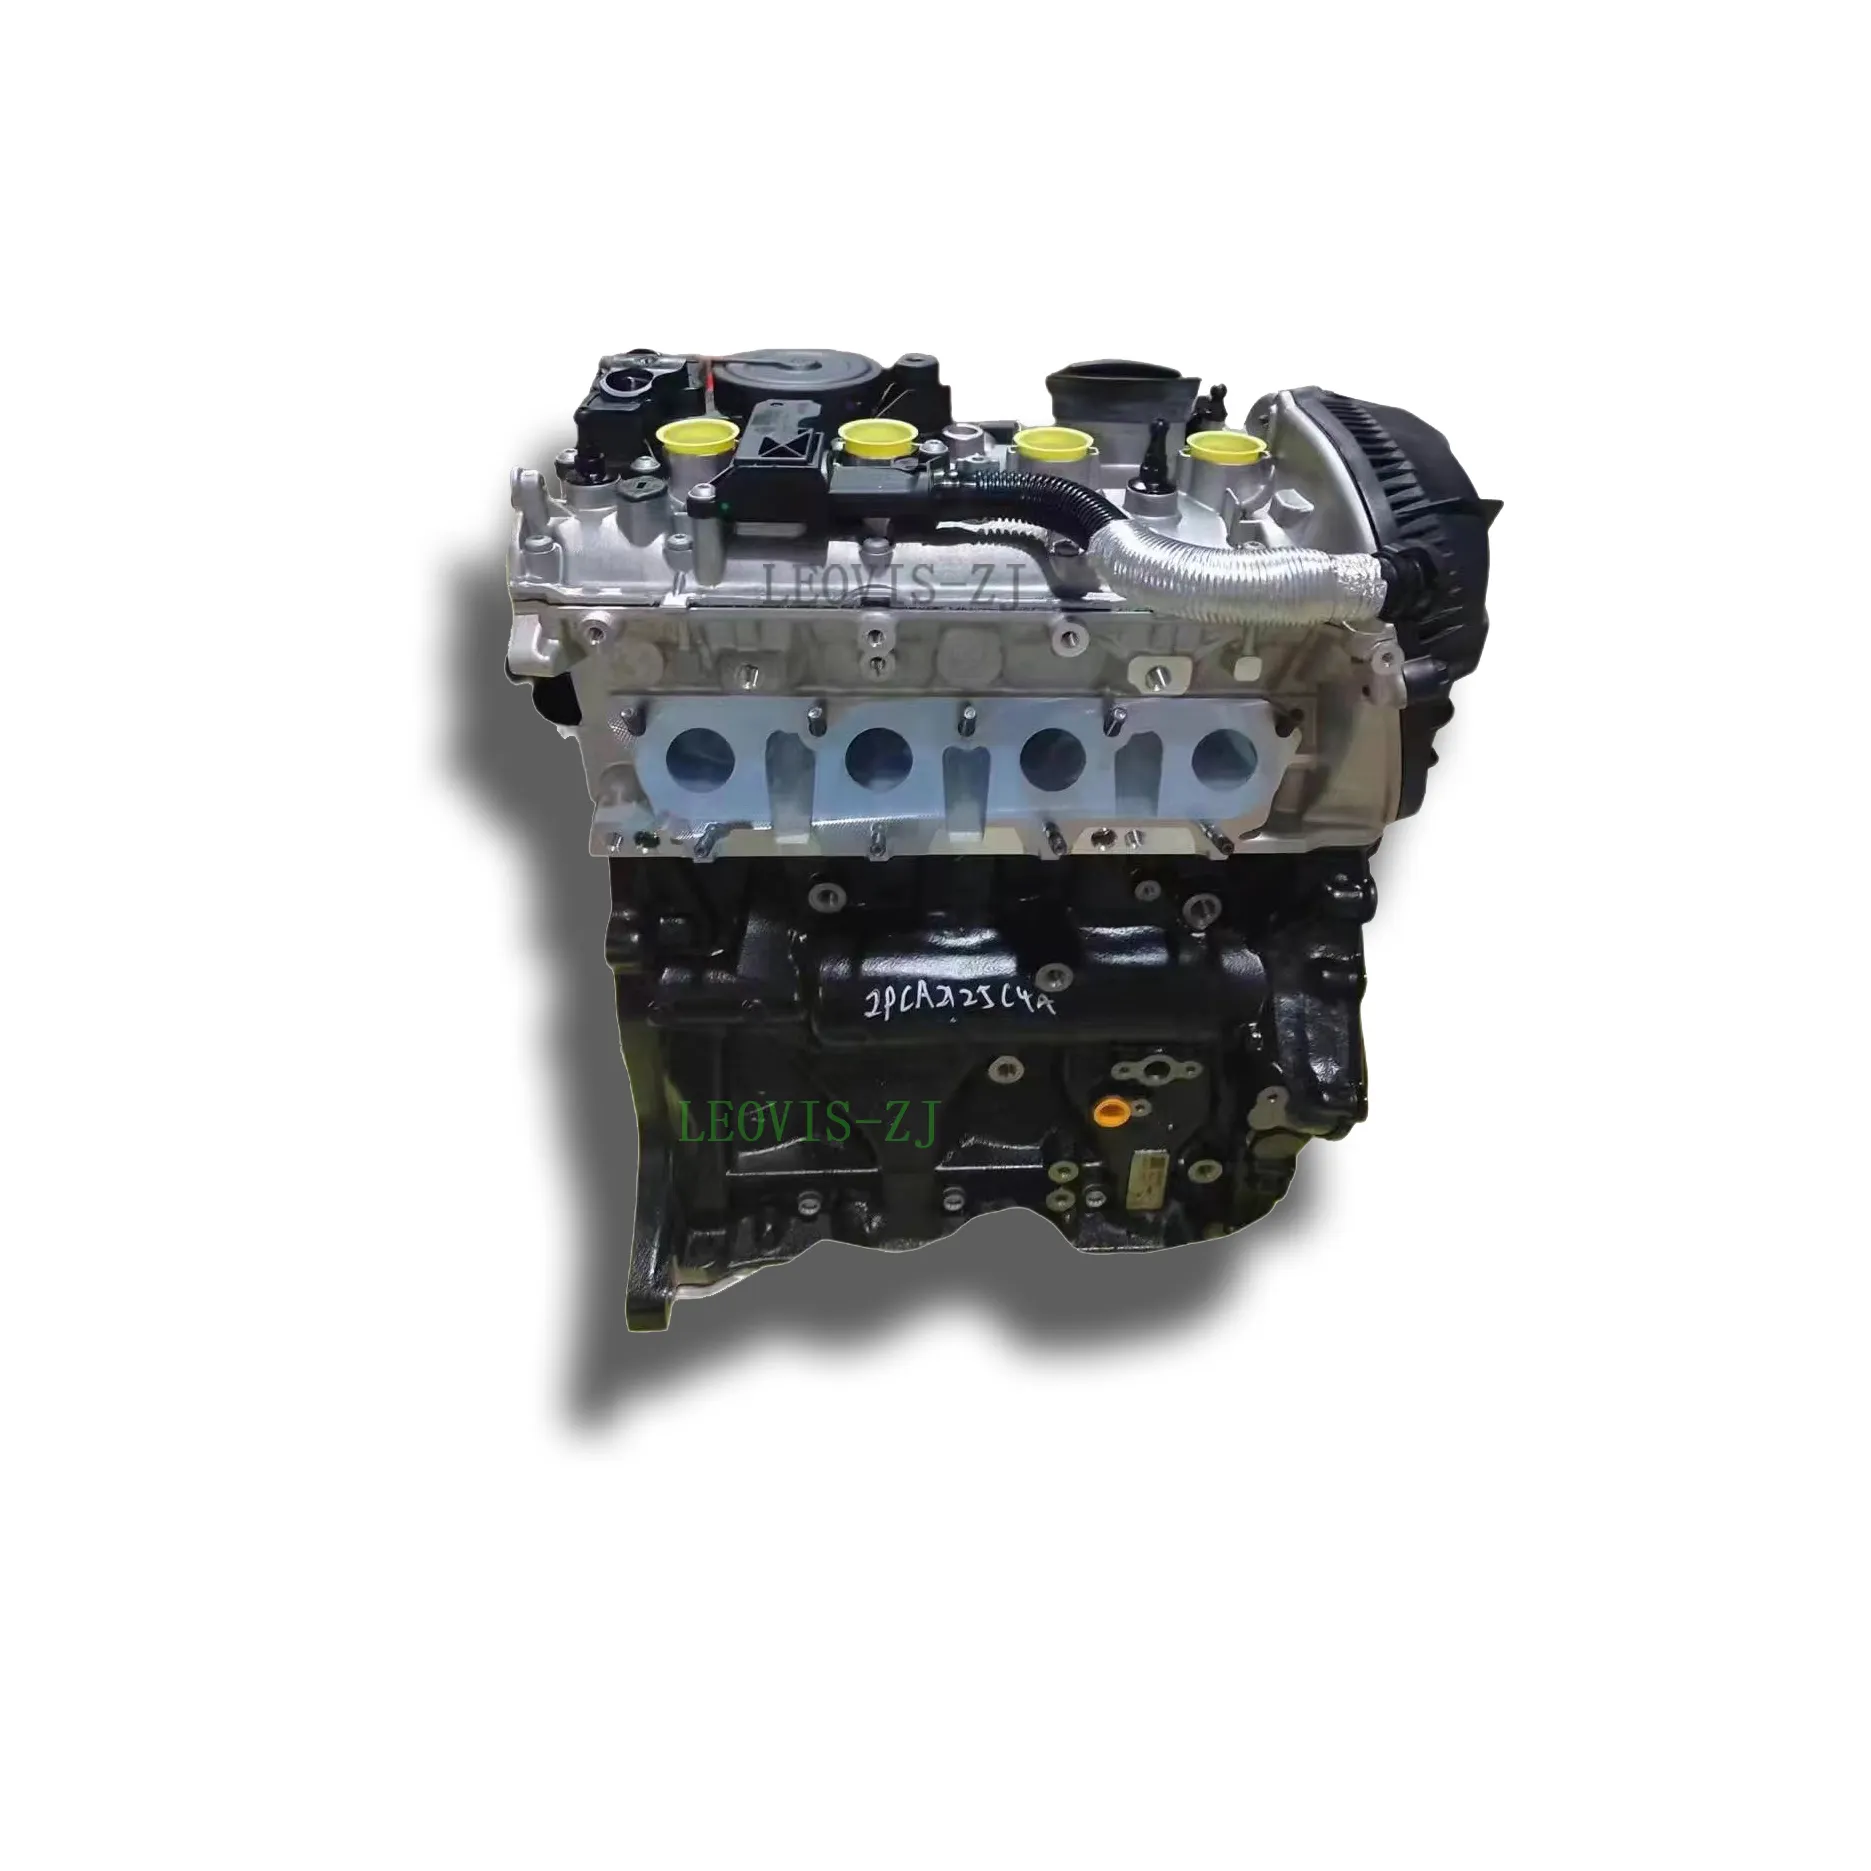 Высококачественный двигатель, новый двигатель EA888 1,8 TFSI CDA cccz CDA, длинный блок двигателя для VW Tiguan GOLF JETTA AUDI A3 A4 A5, автомобильный двигатель